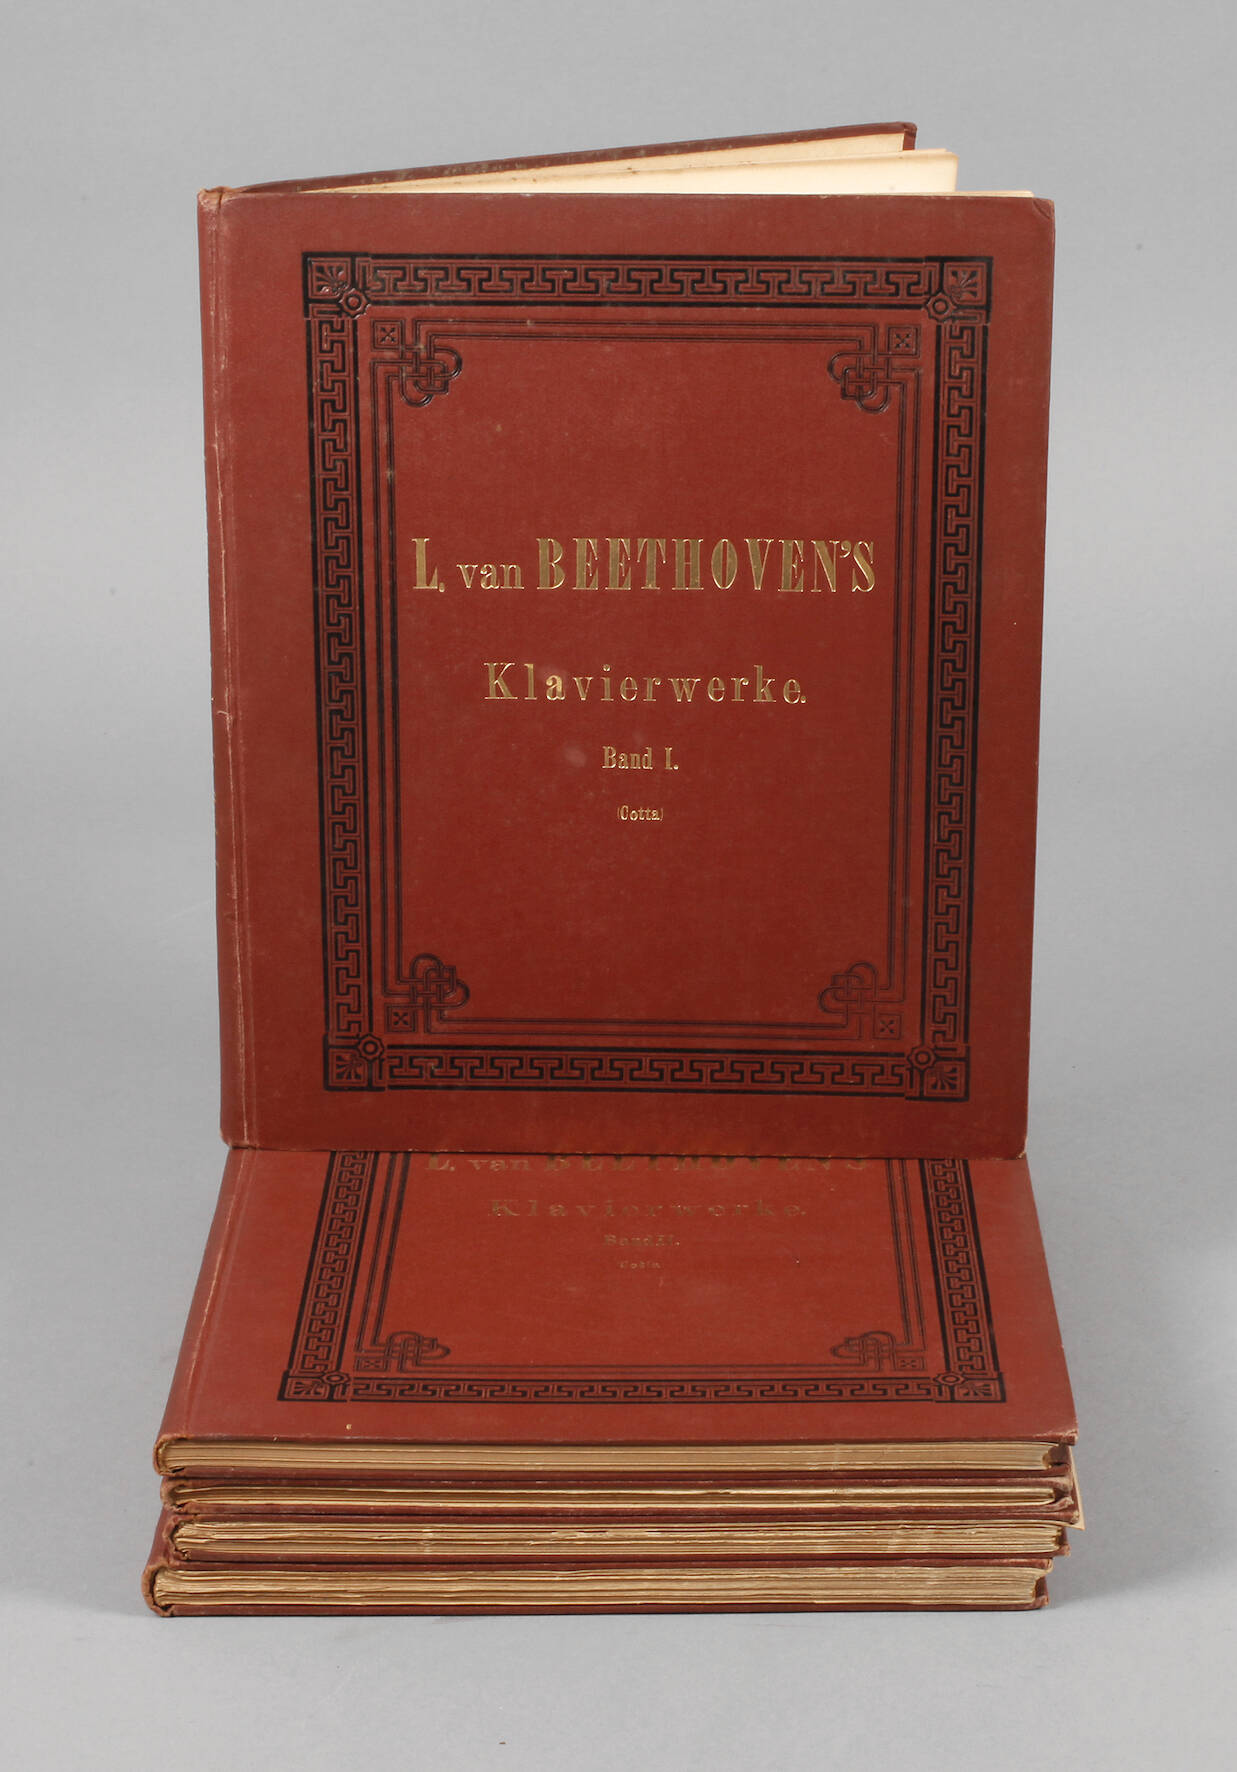 L. van Beethovens Klavierwerke